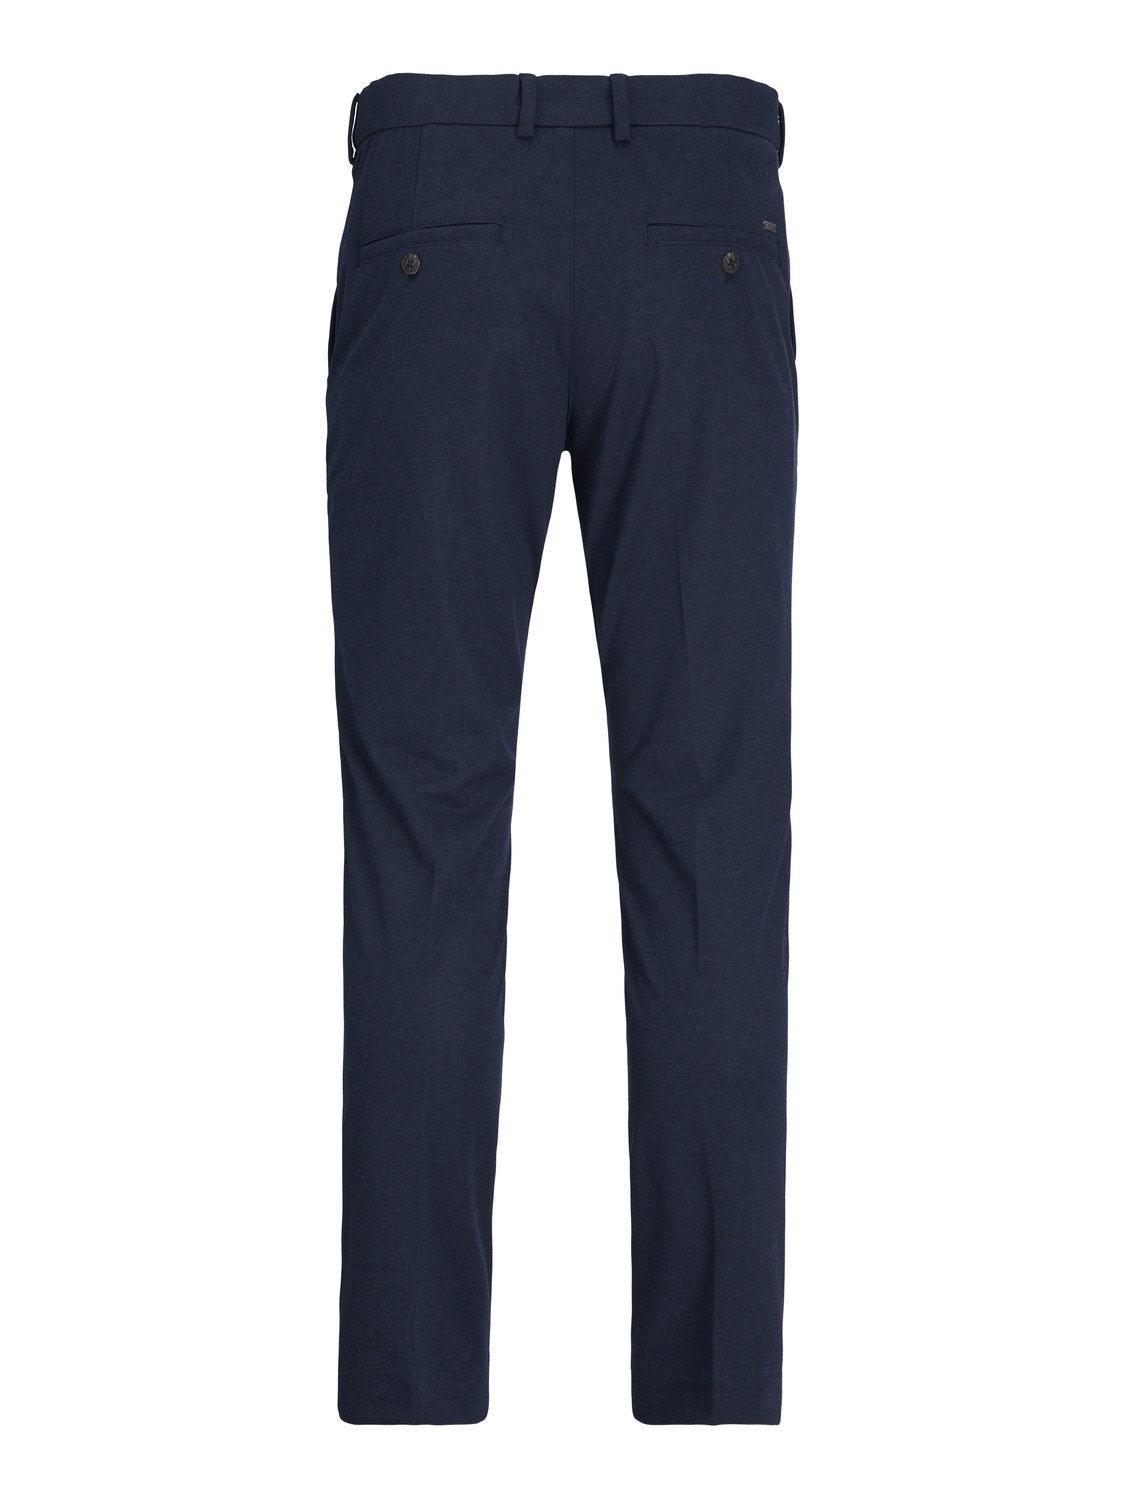 Jack & Jones Plus Size Slim Fit Spodnie chino -Navy Blazer - 12250503